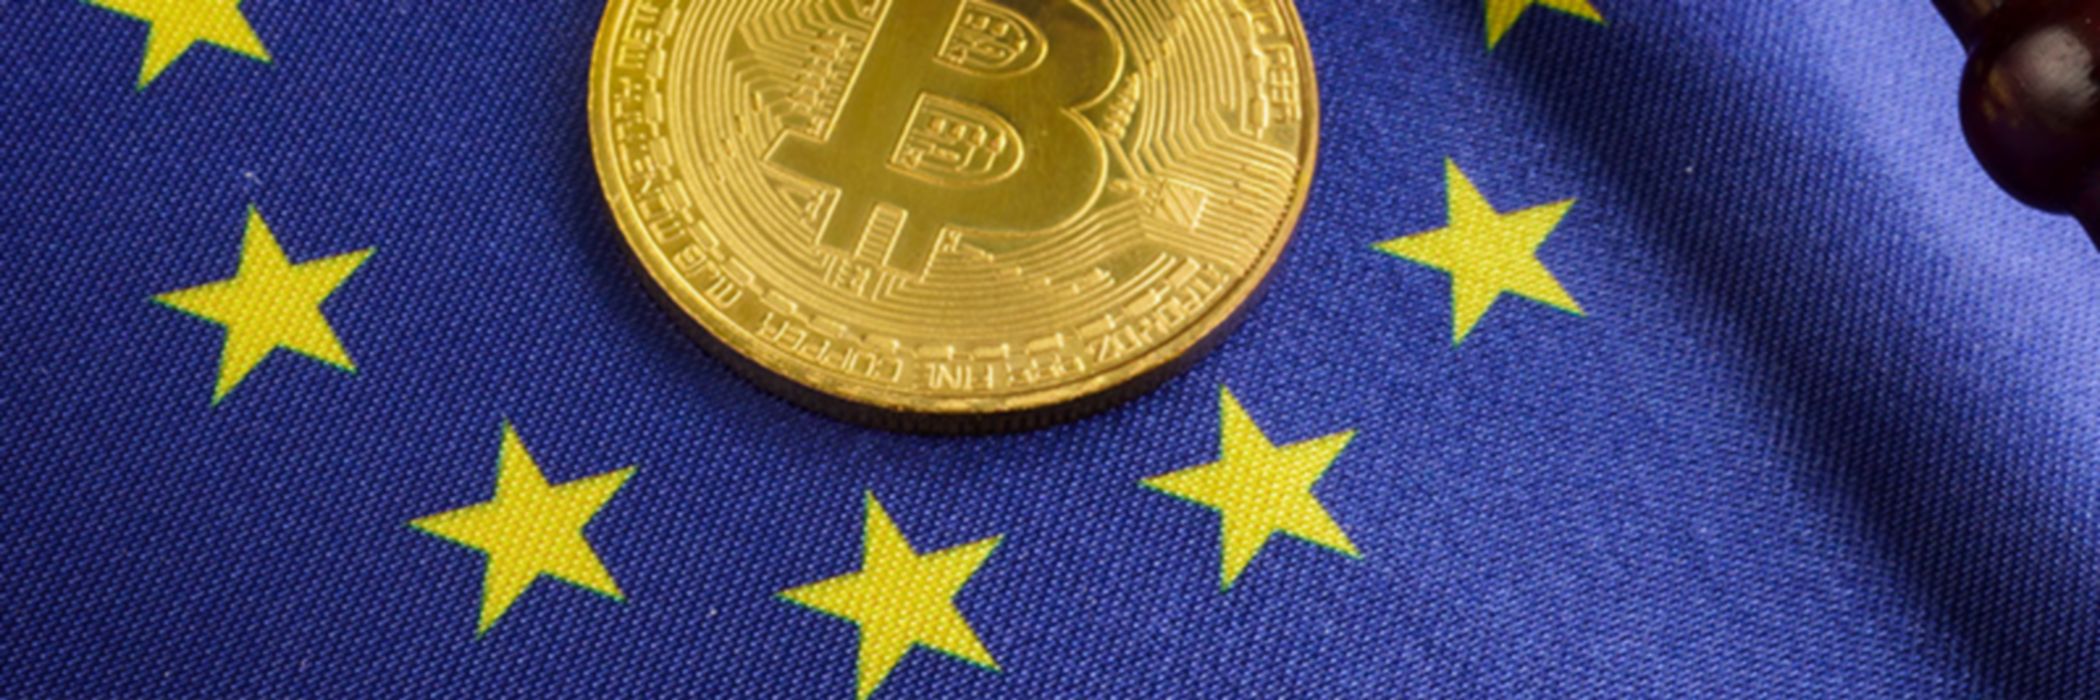 Illuastrasjon med en bitcoin i en sirkel av EU-stjerner, og en dommerklubbe